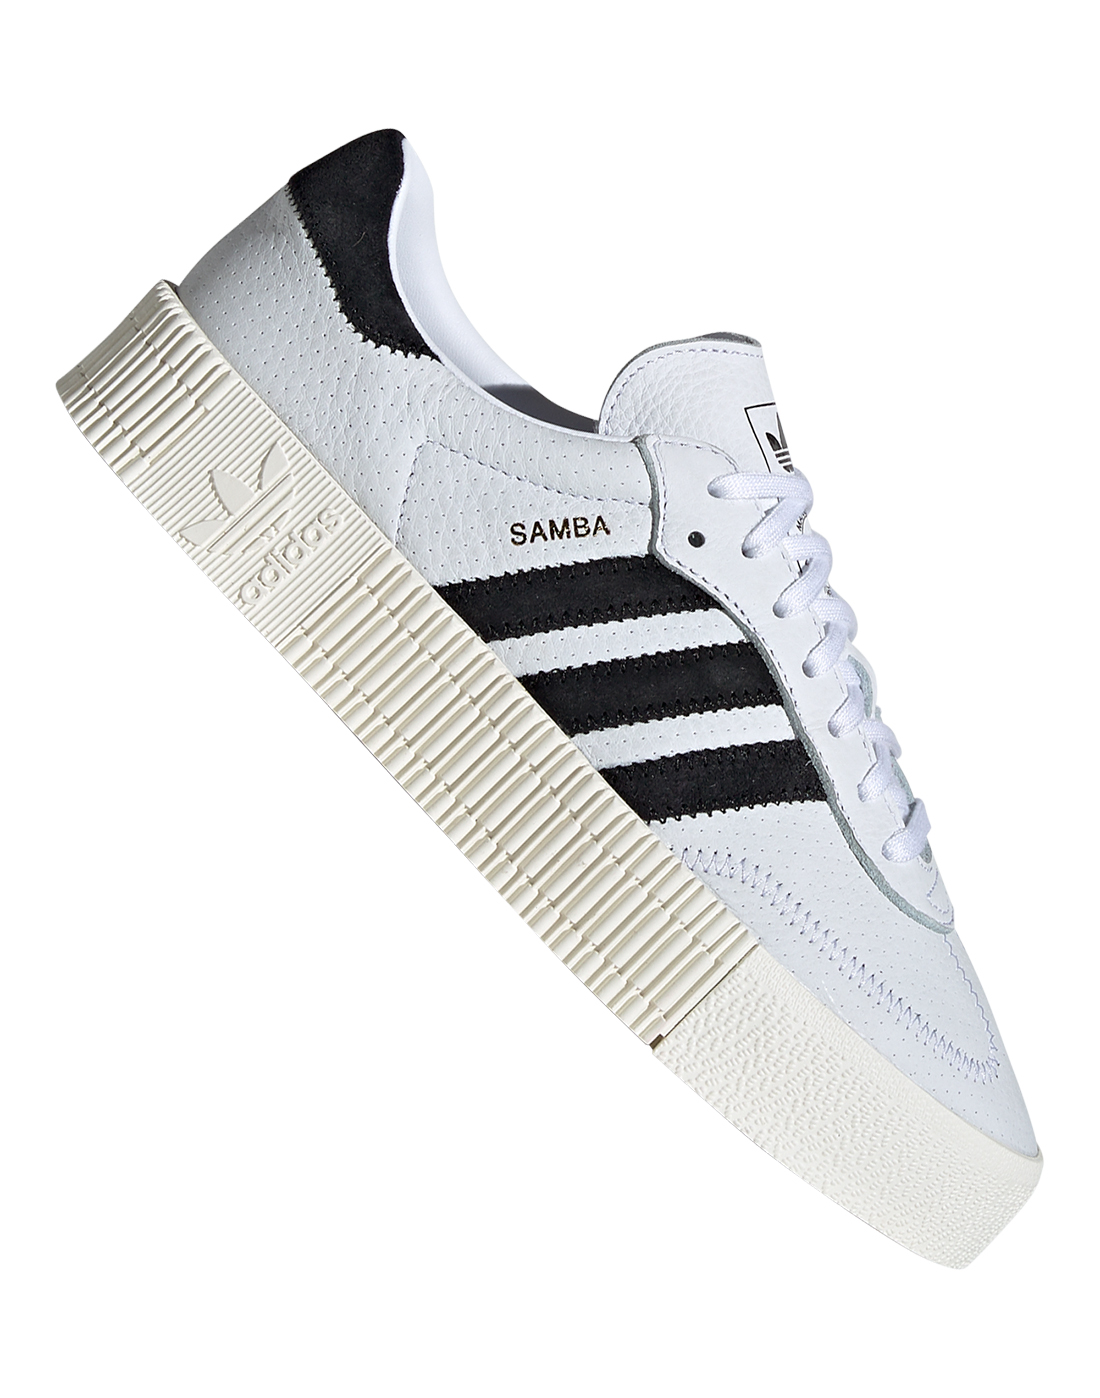 Самба подошва. Adidas Samba White. Adidas Originals Samba Rose. Адидас Самба с белой подошвой. Adidas Samba белые.